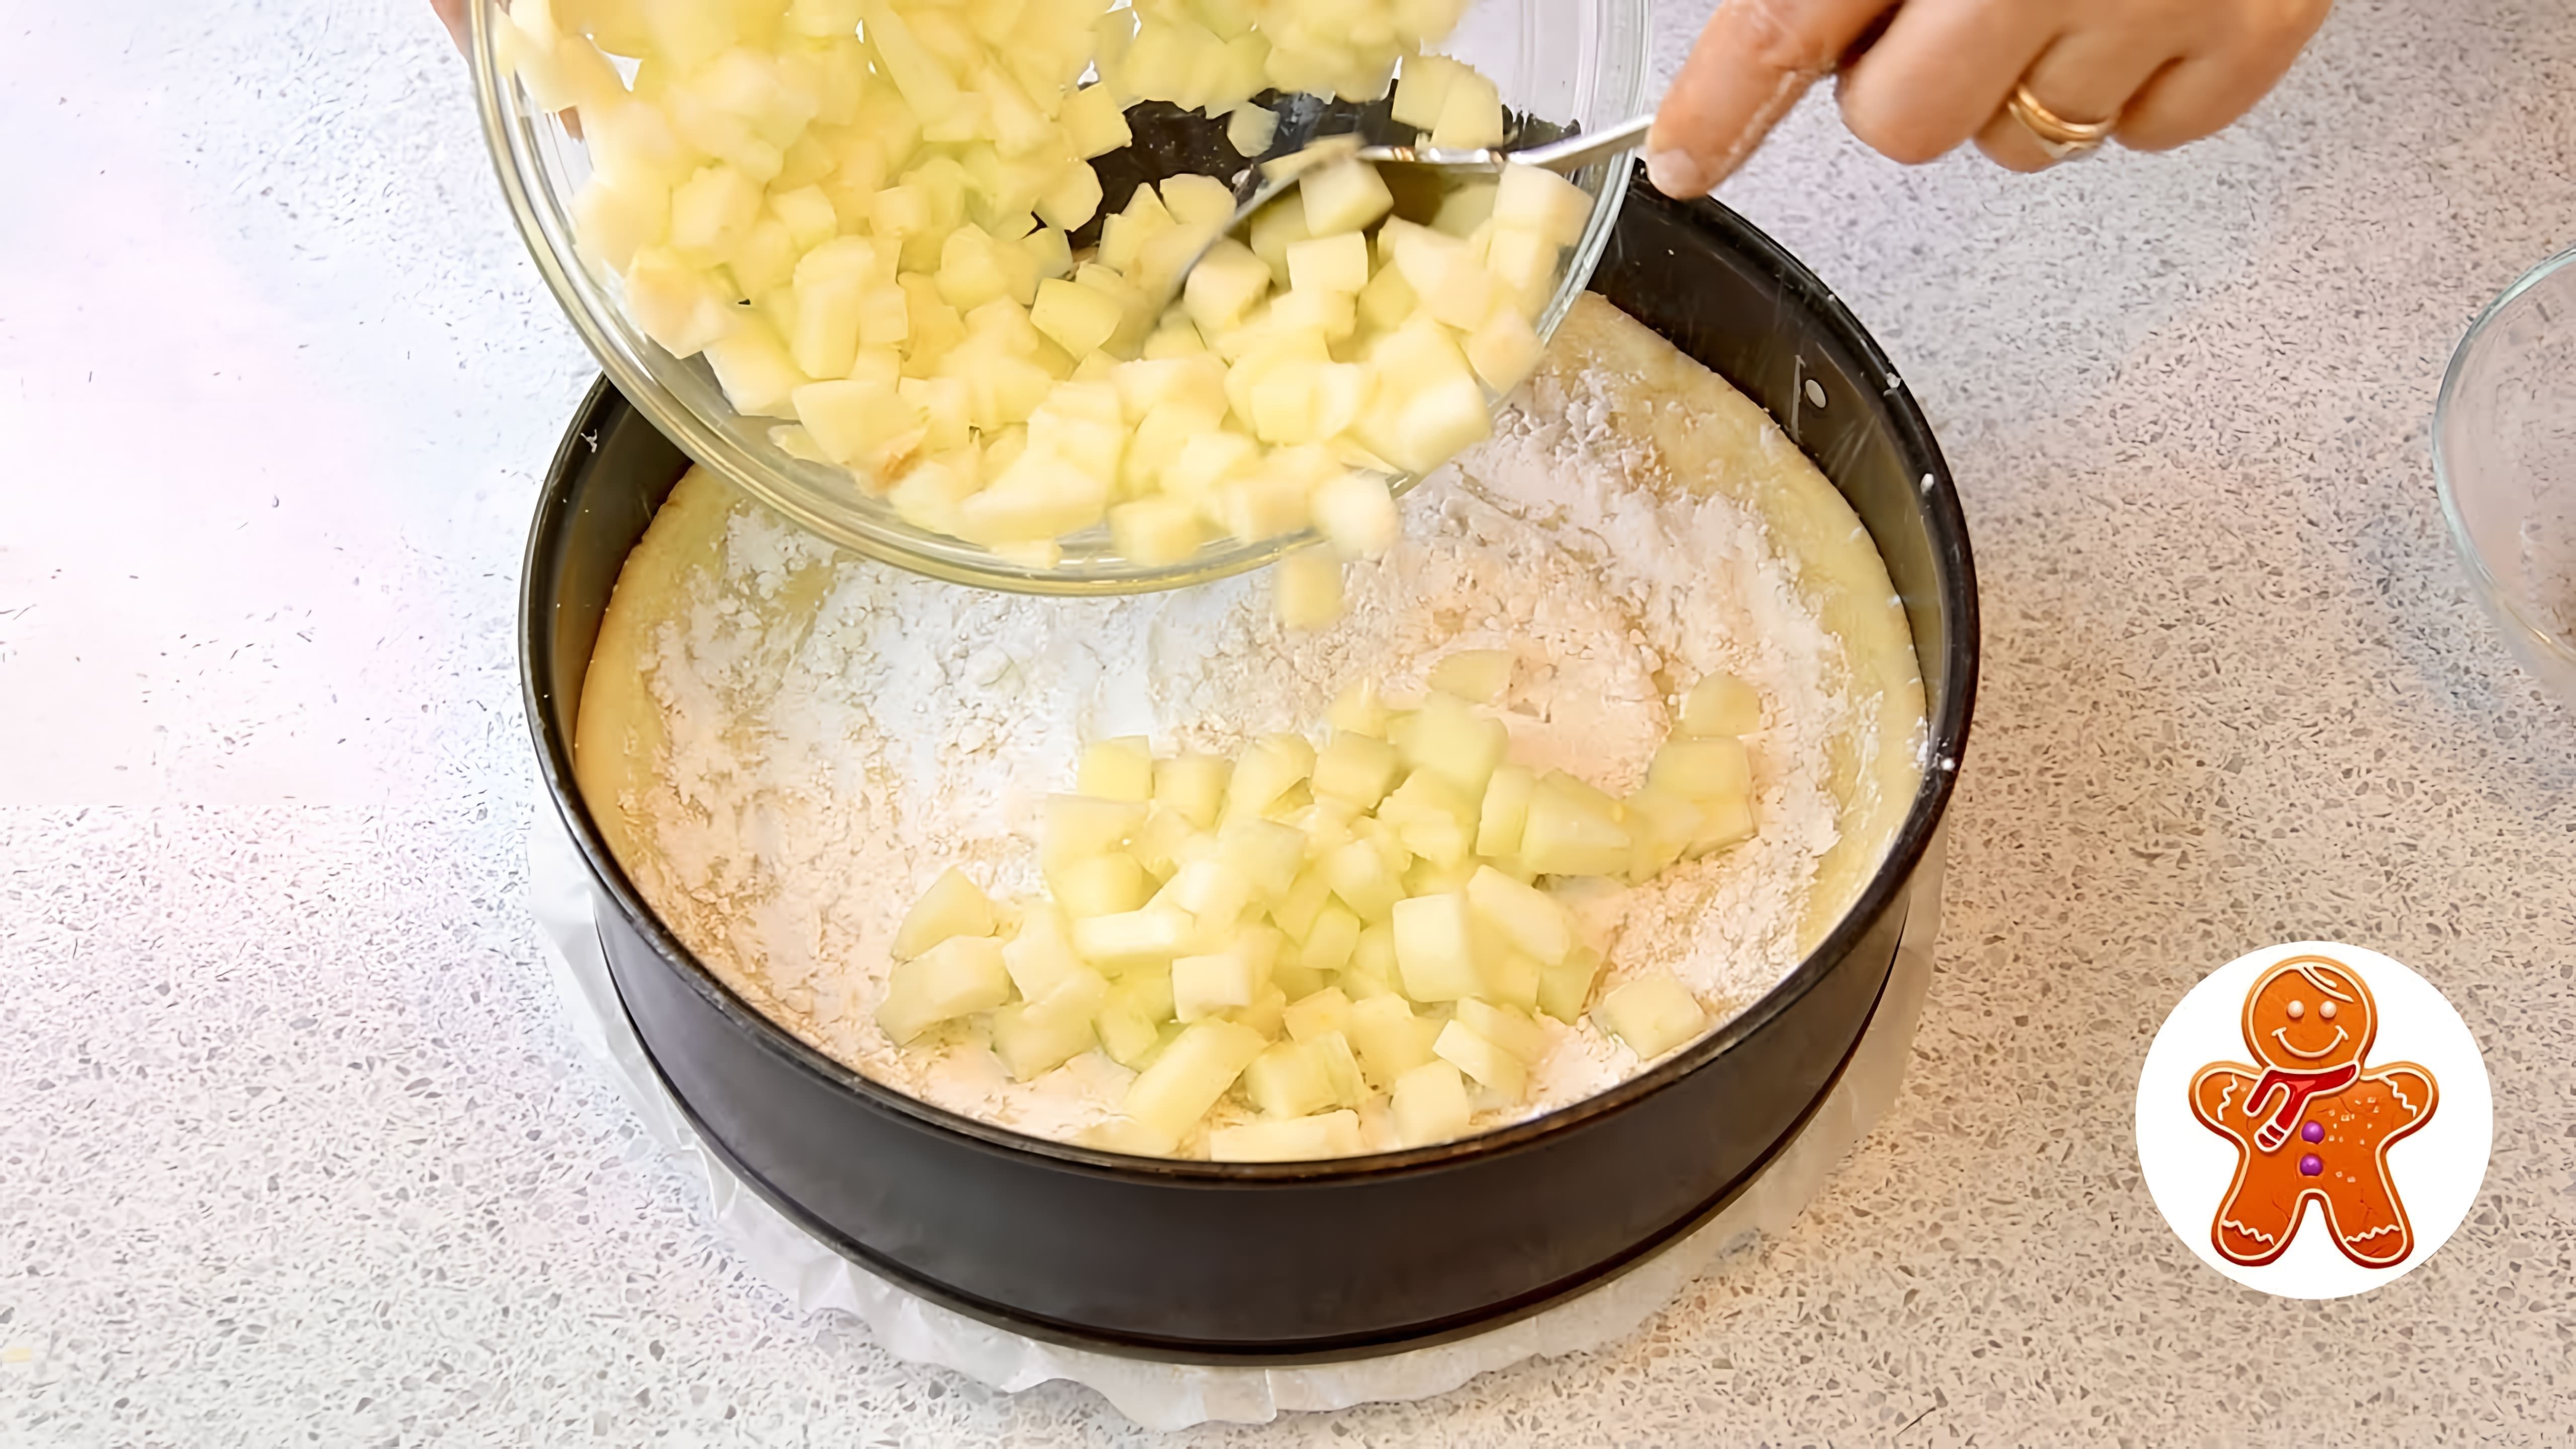 В этом видео демонстрируется рецепт приготовления пирога с яблоками и лимоном, который называется "Любимый пирог Императрицы"